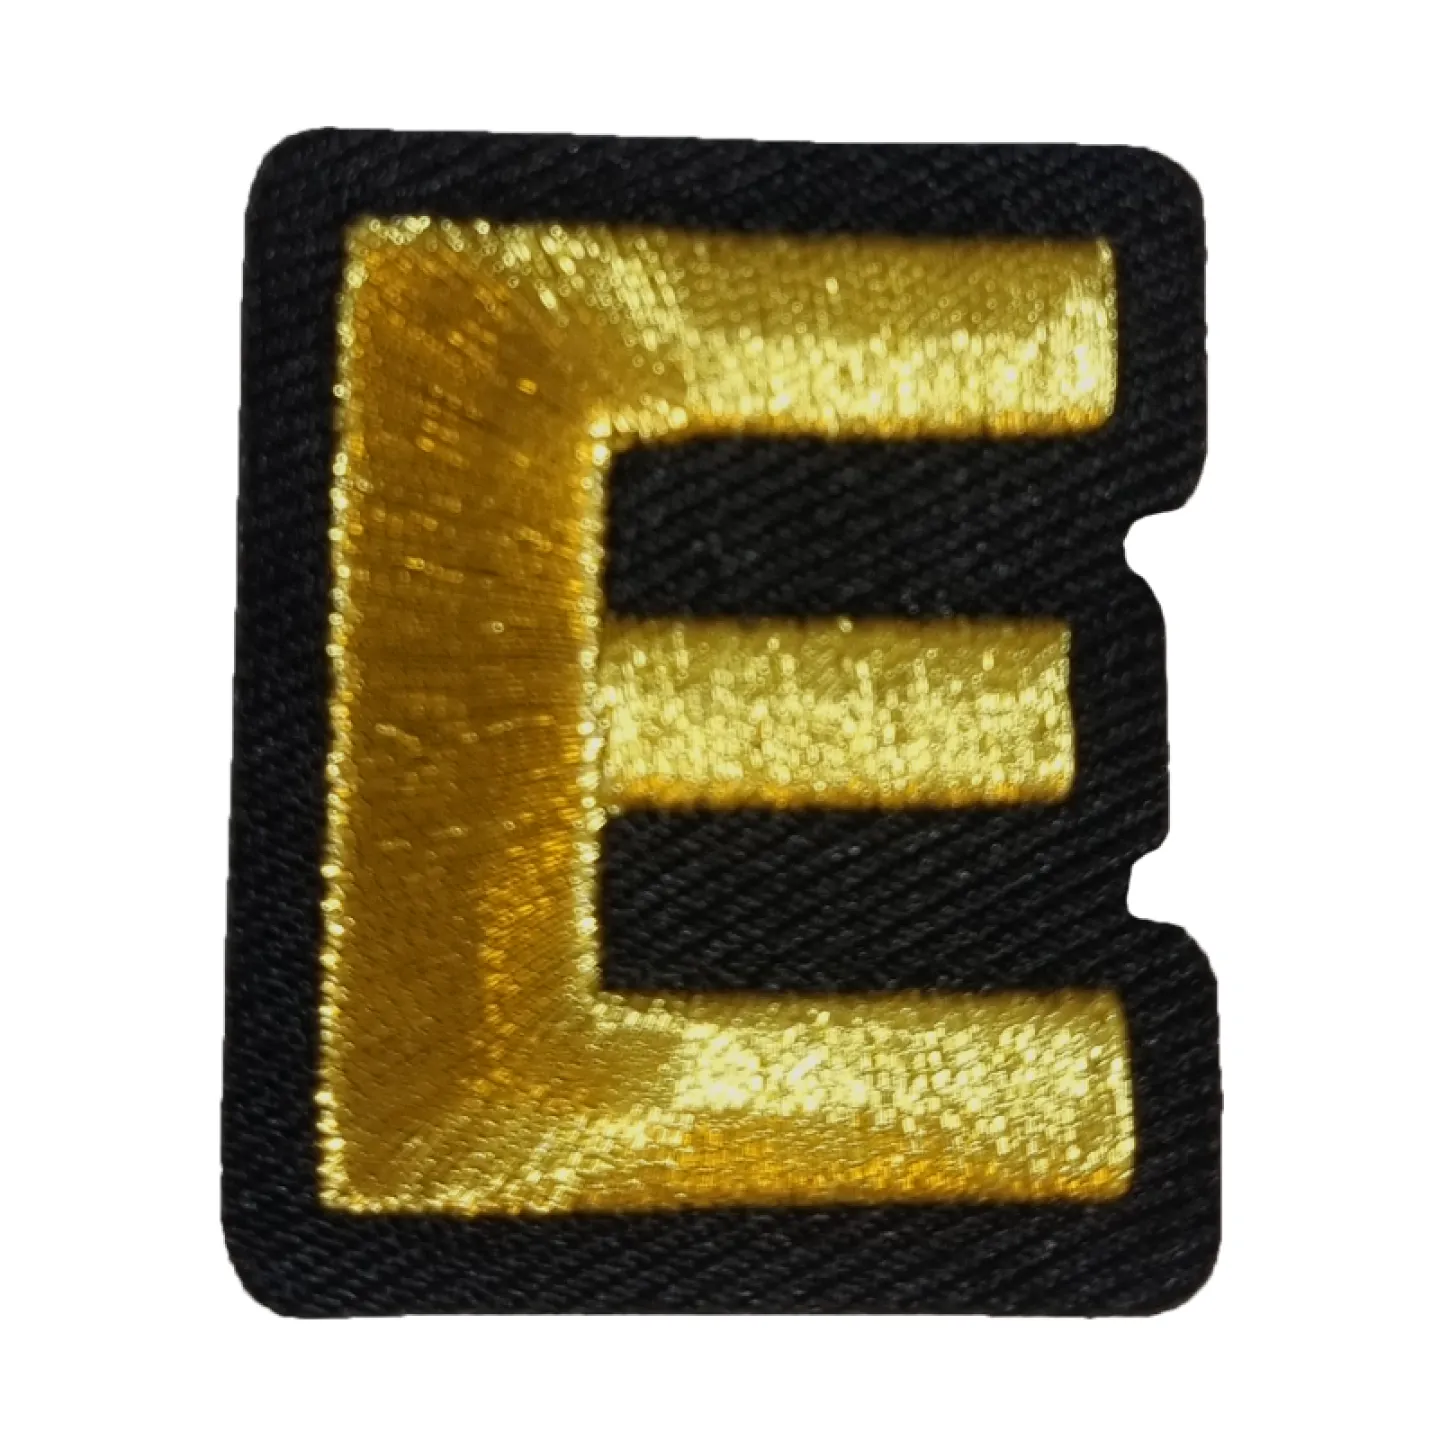 Kielegat embleem Gouden letter E.